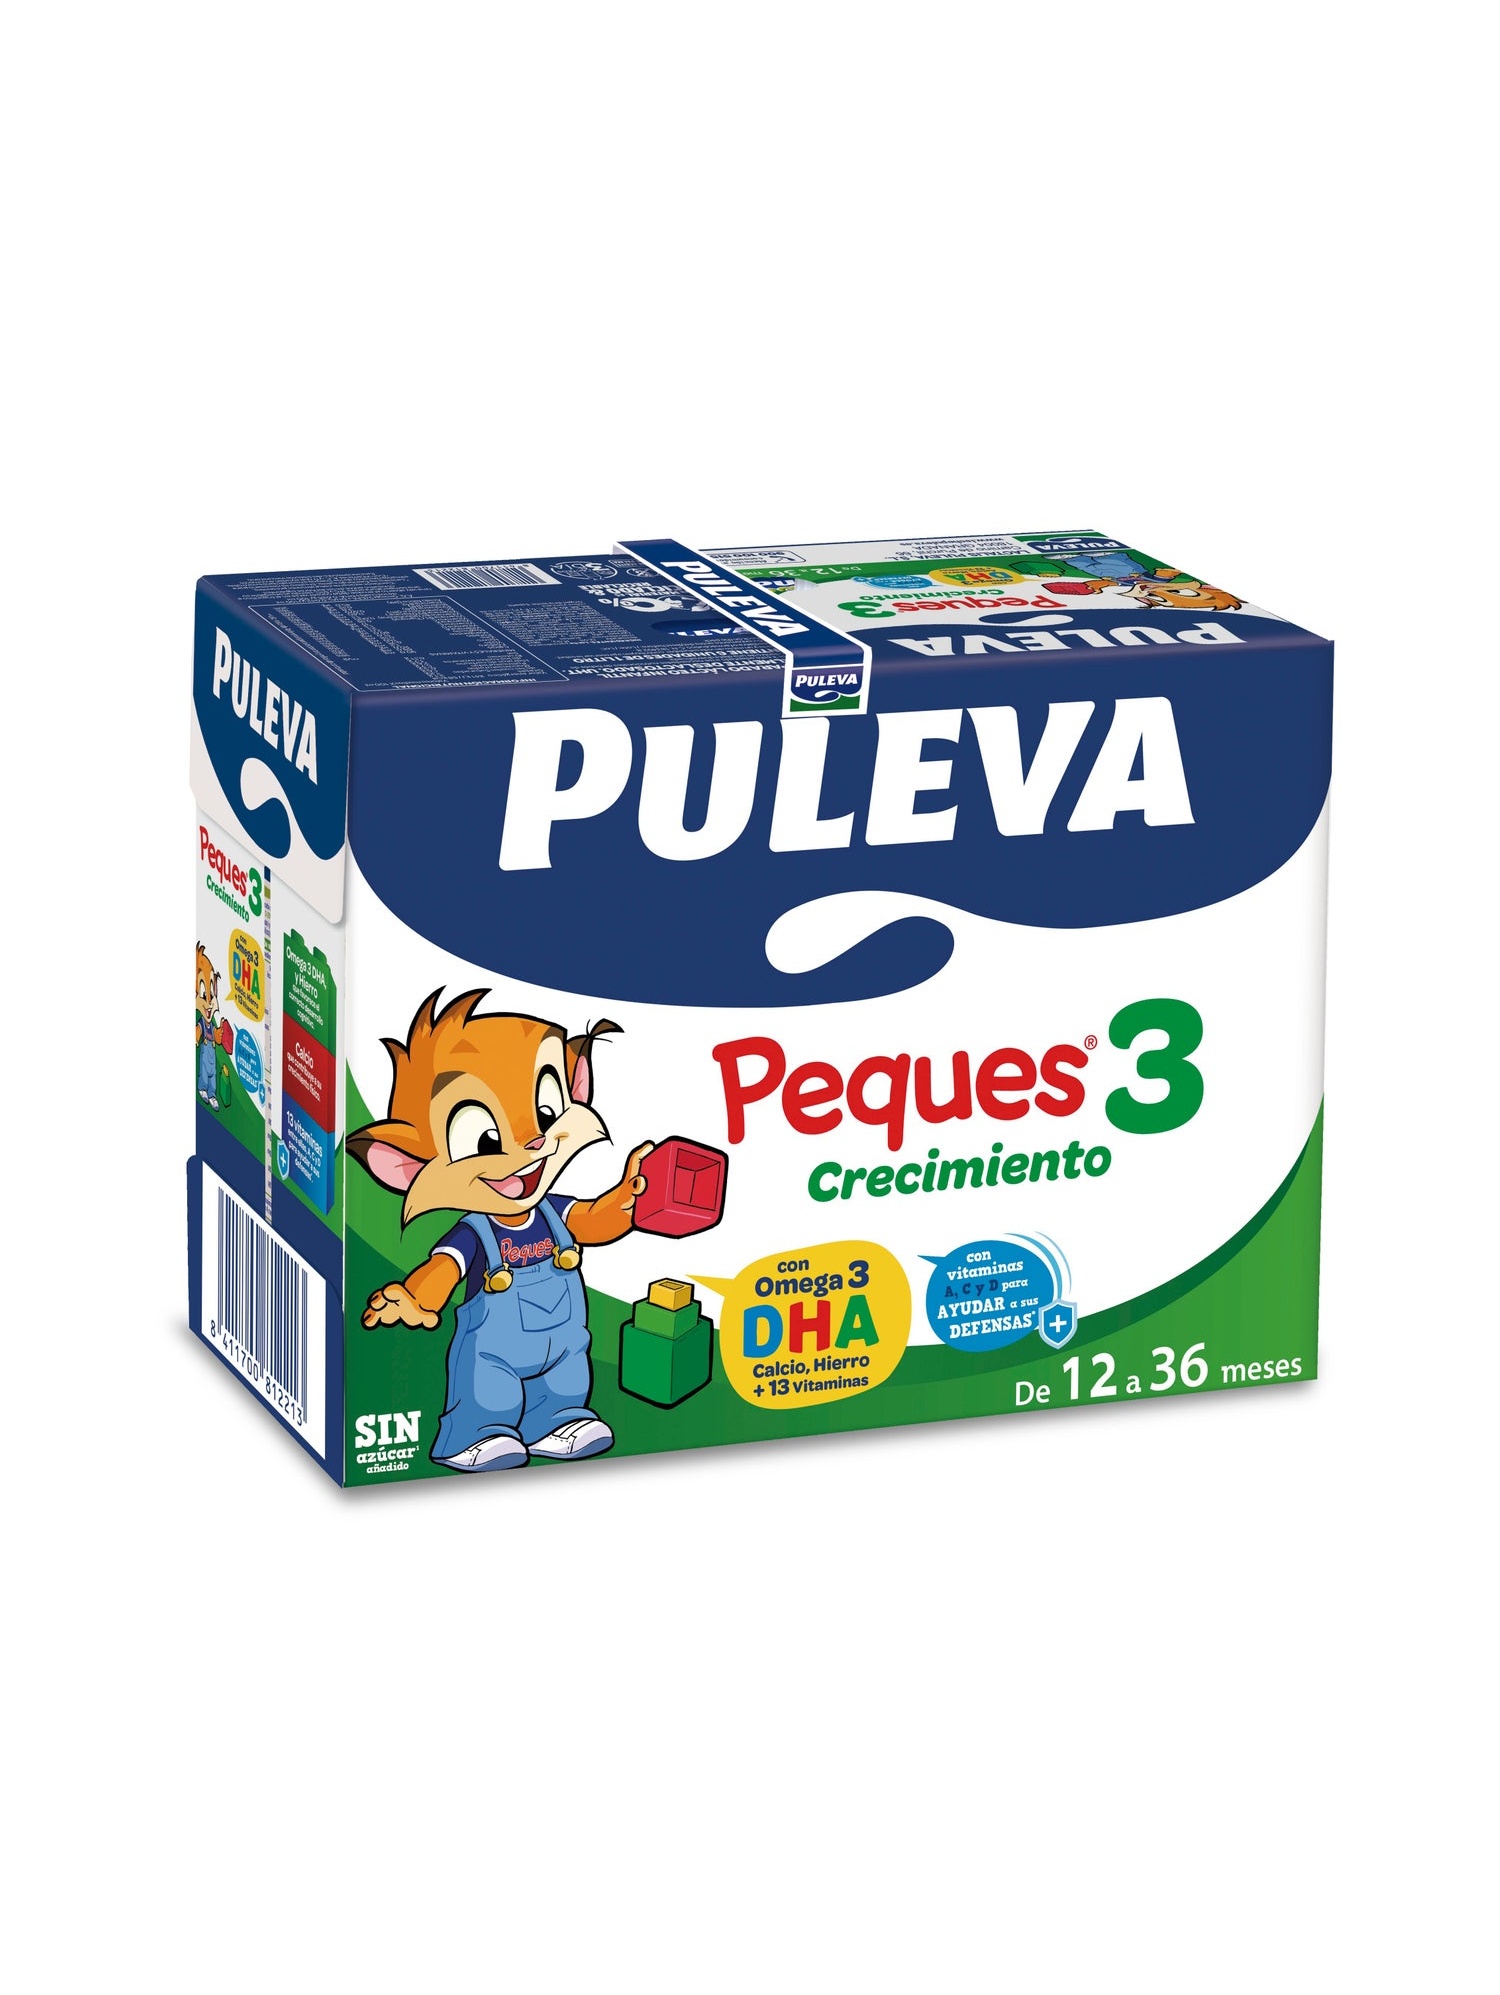 Puleva Peques 3 Crecimientos 6X1000Ml - Farmacia Ciudad Lineal